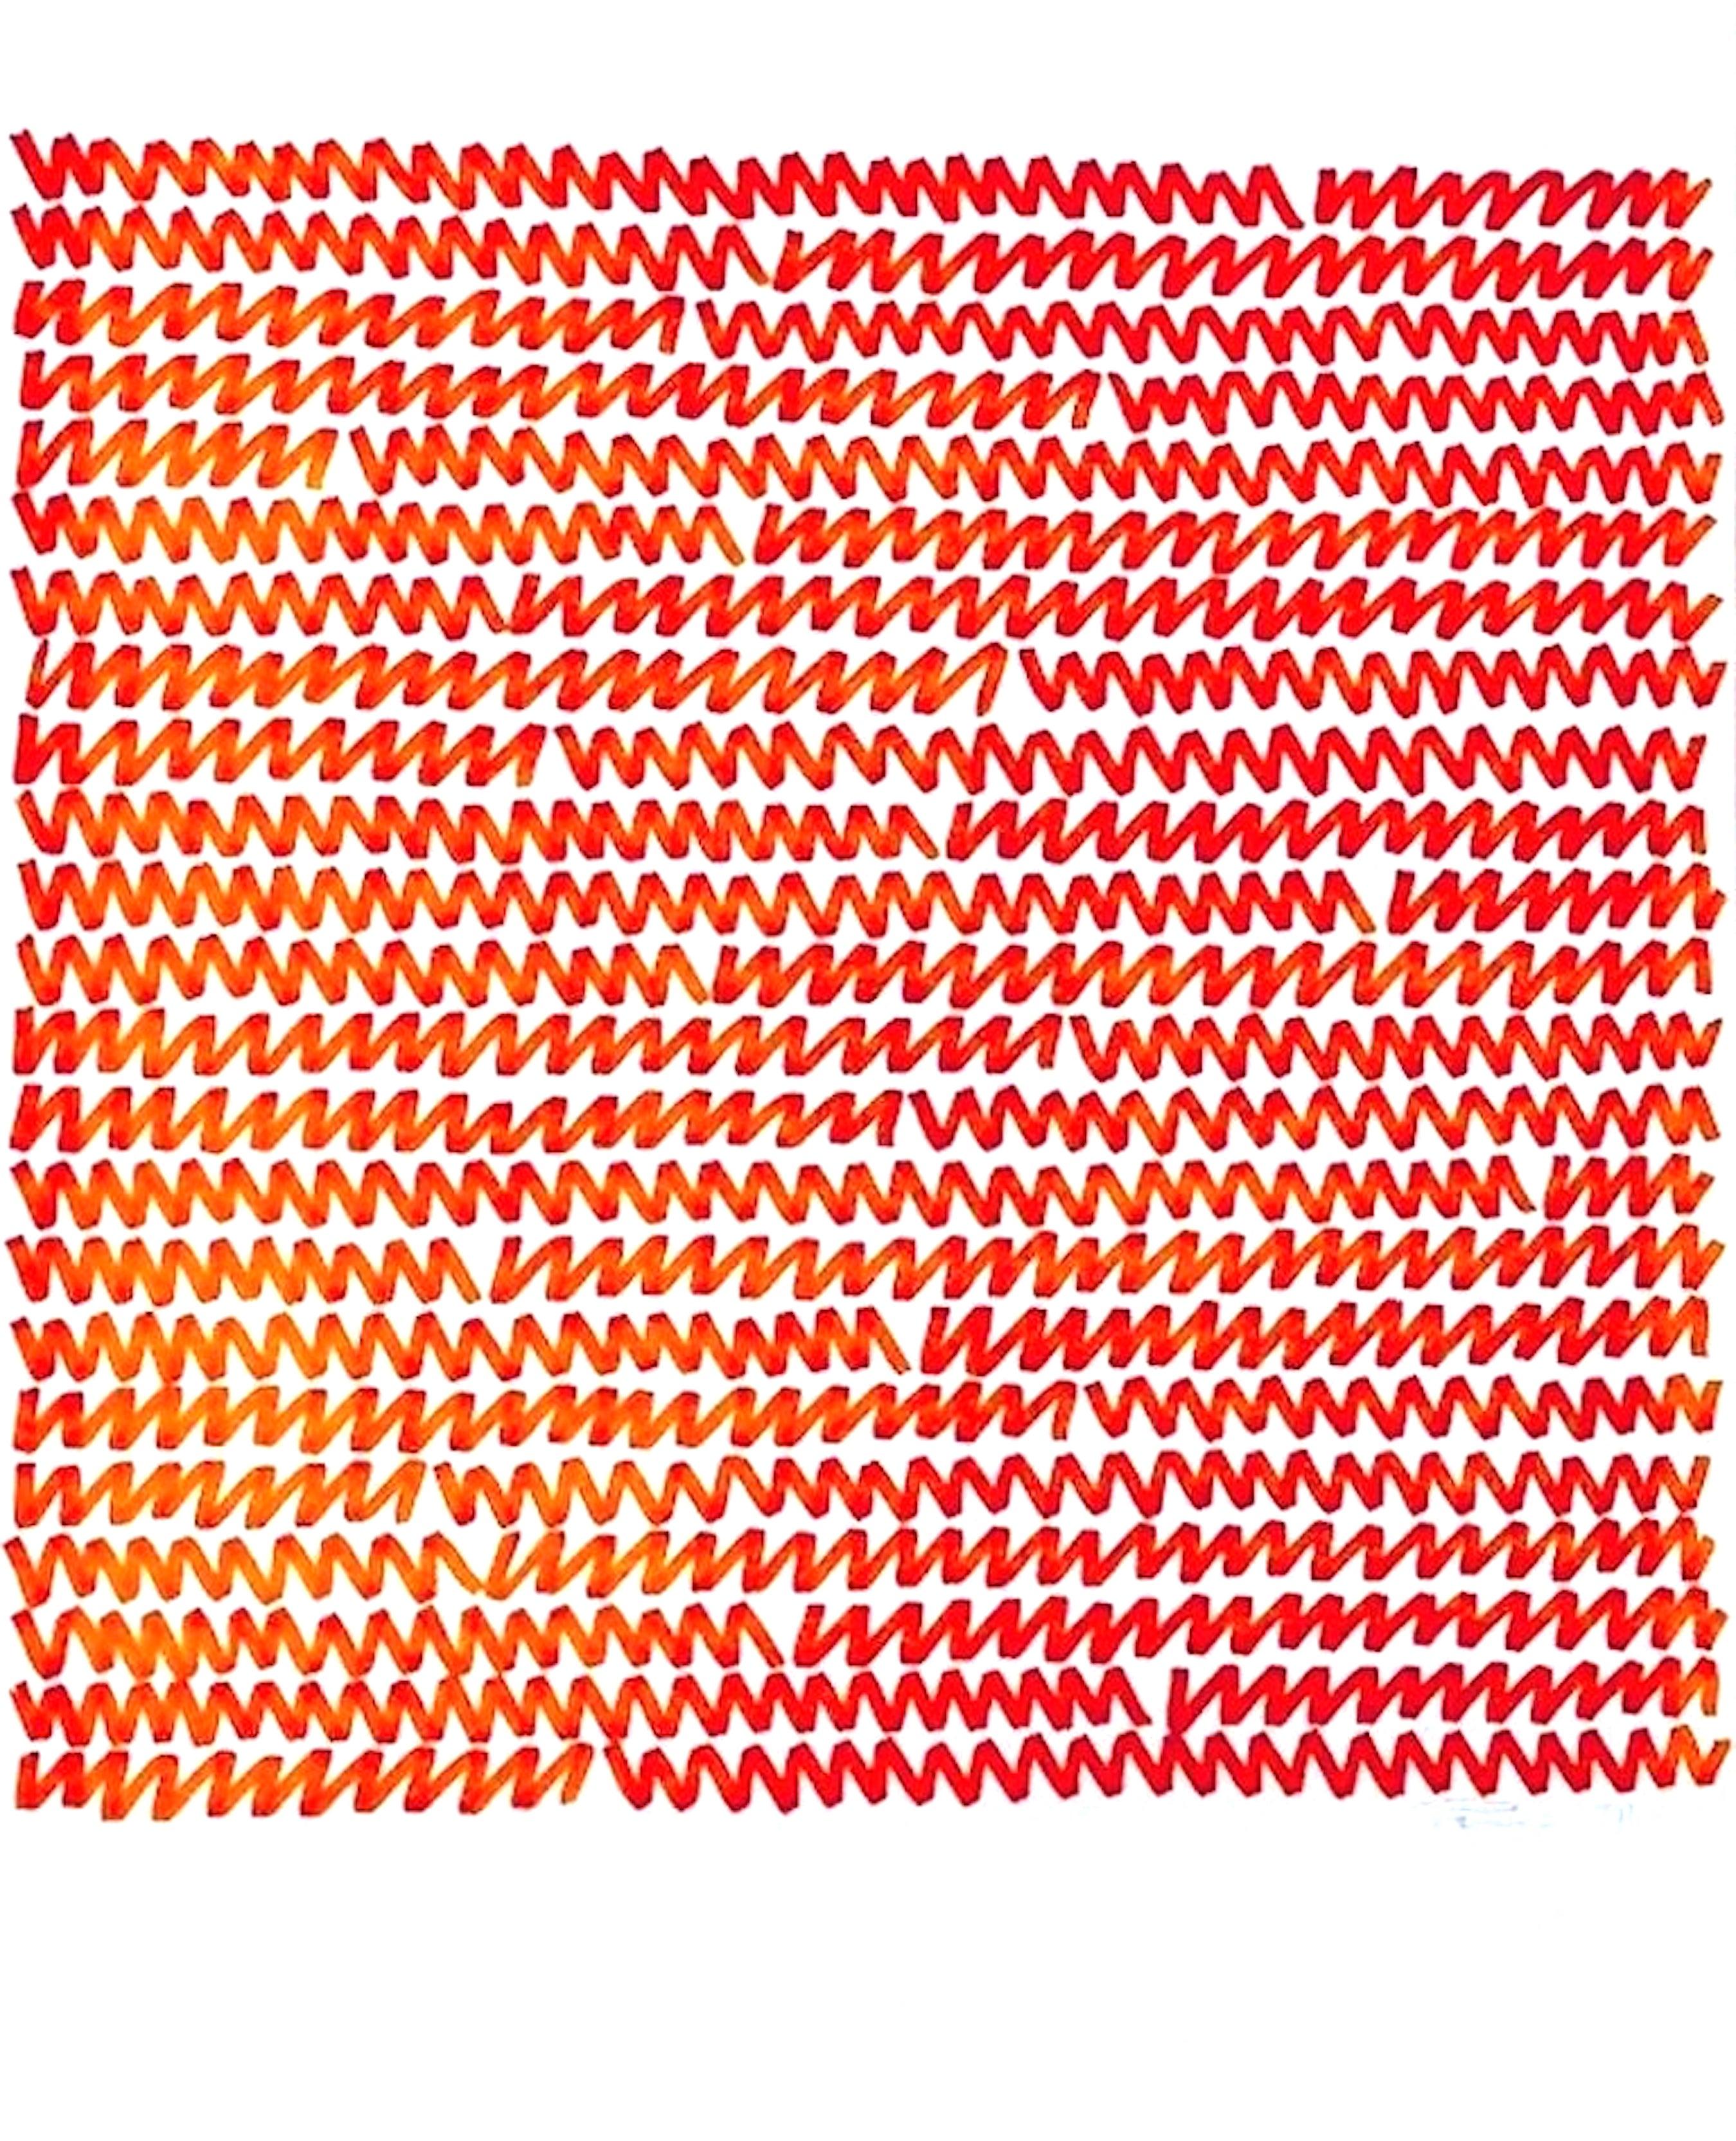 Dessin original signé et daté au crayon par Aubrey Penny Janvier 1971 Série Réflexion #6642.

Aubrey Penny (Américain, 1917-2000) était un artiste abstrait californien novateur qui a travaillé sur divers supports. Propriétaire de la galerie No-os